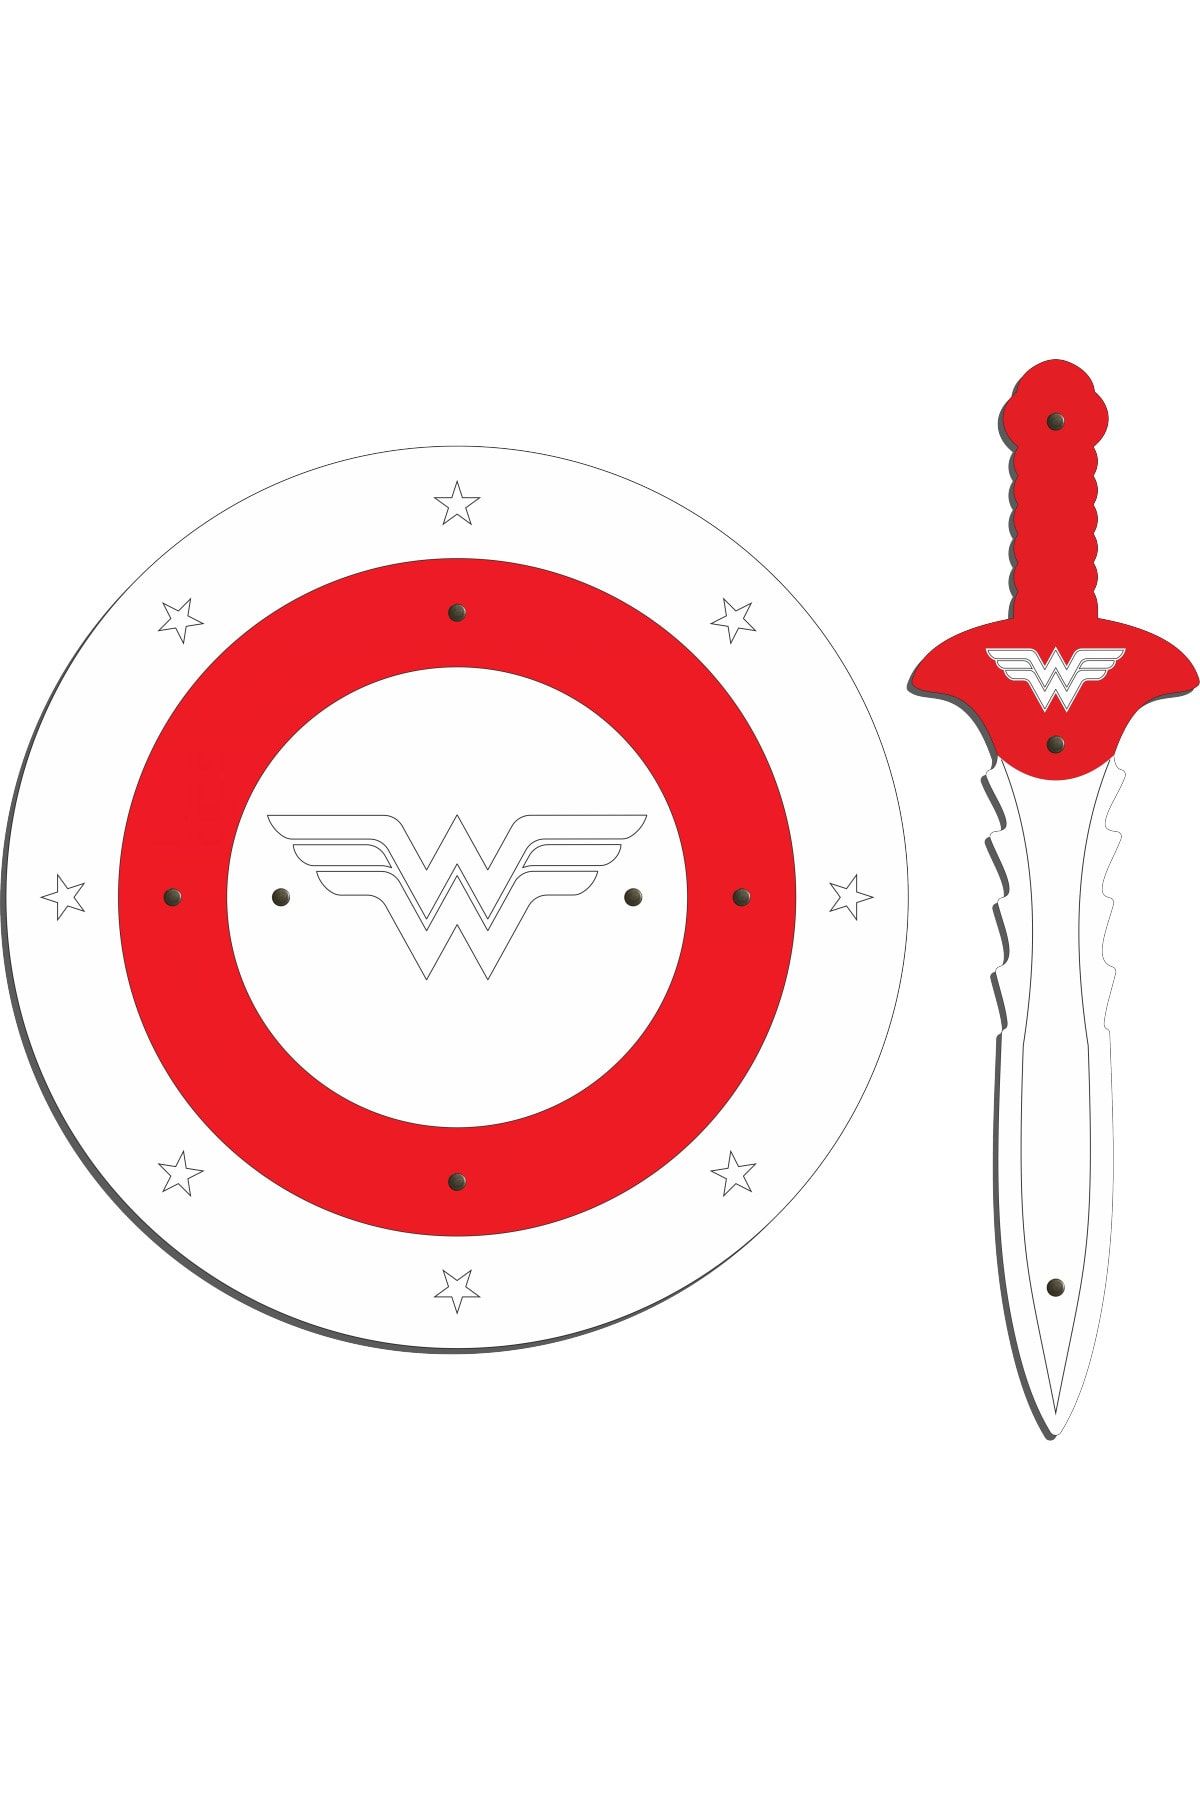 Ahtek Ahşap Oyuncak Seti 2’li, Wonder Woman Figürlü Kalkan Ve Kılıç